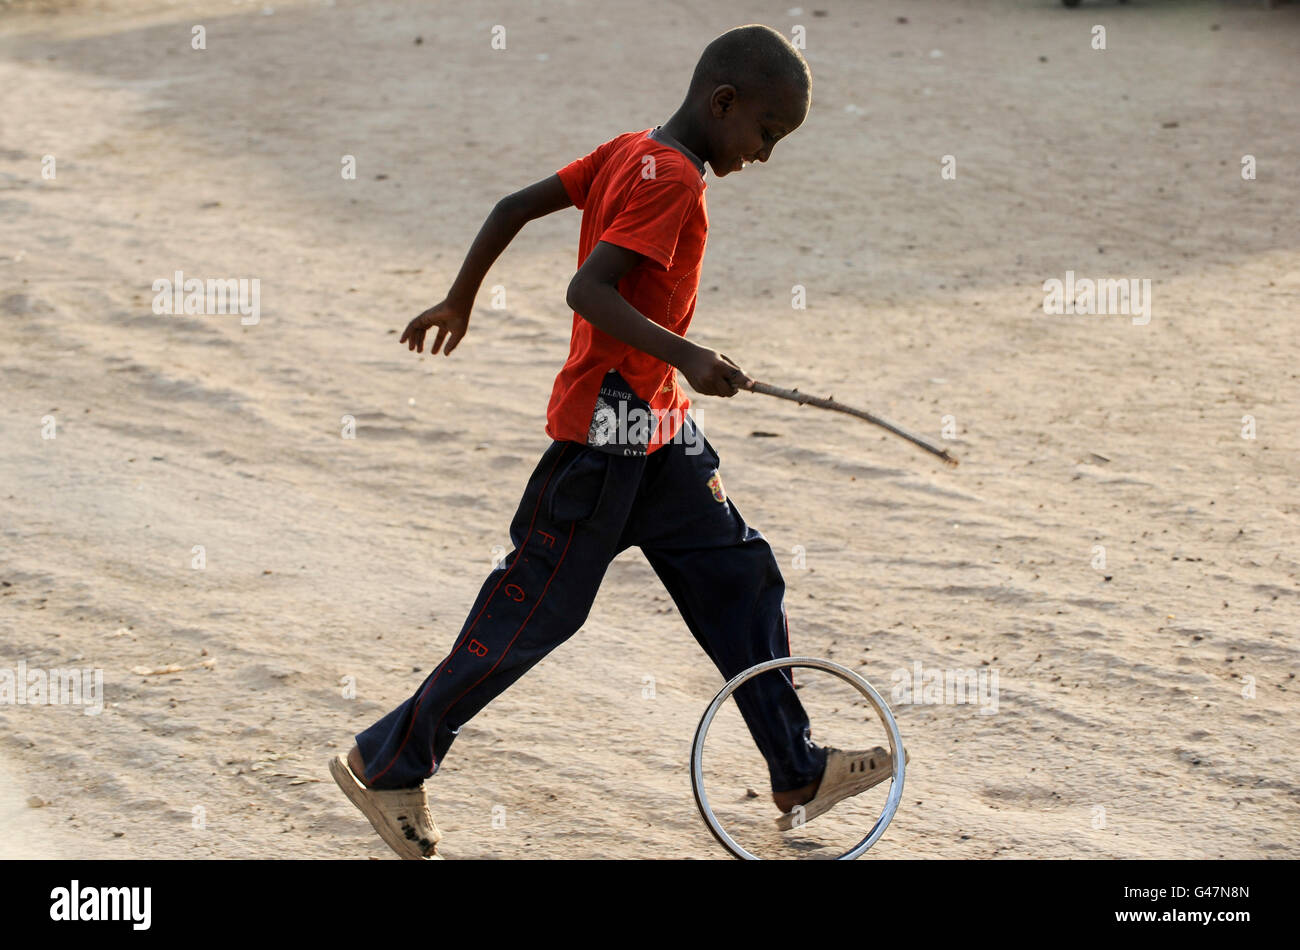 La région de Turkana au Kenya, le HCR, le camp de réfugiés de Kakuma où 80,000 permanent des réfugiés de Somalie, l'Éthiopie, le Soudan du Sud vivent, Somali Garçon jouant avec rim Banque D'Images